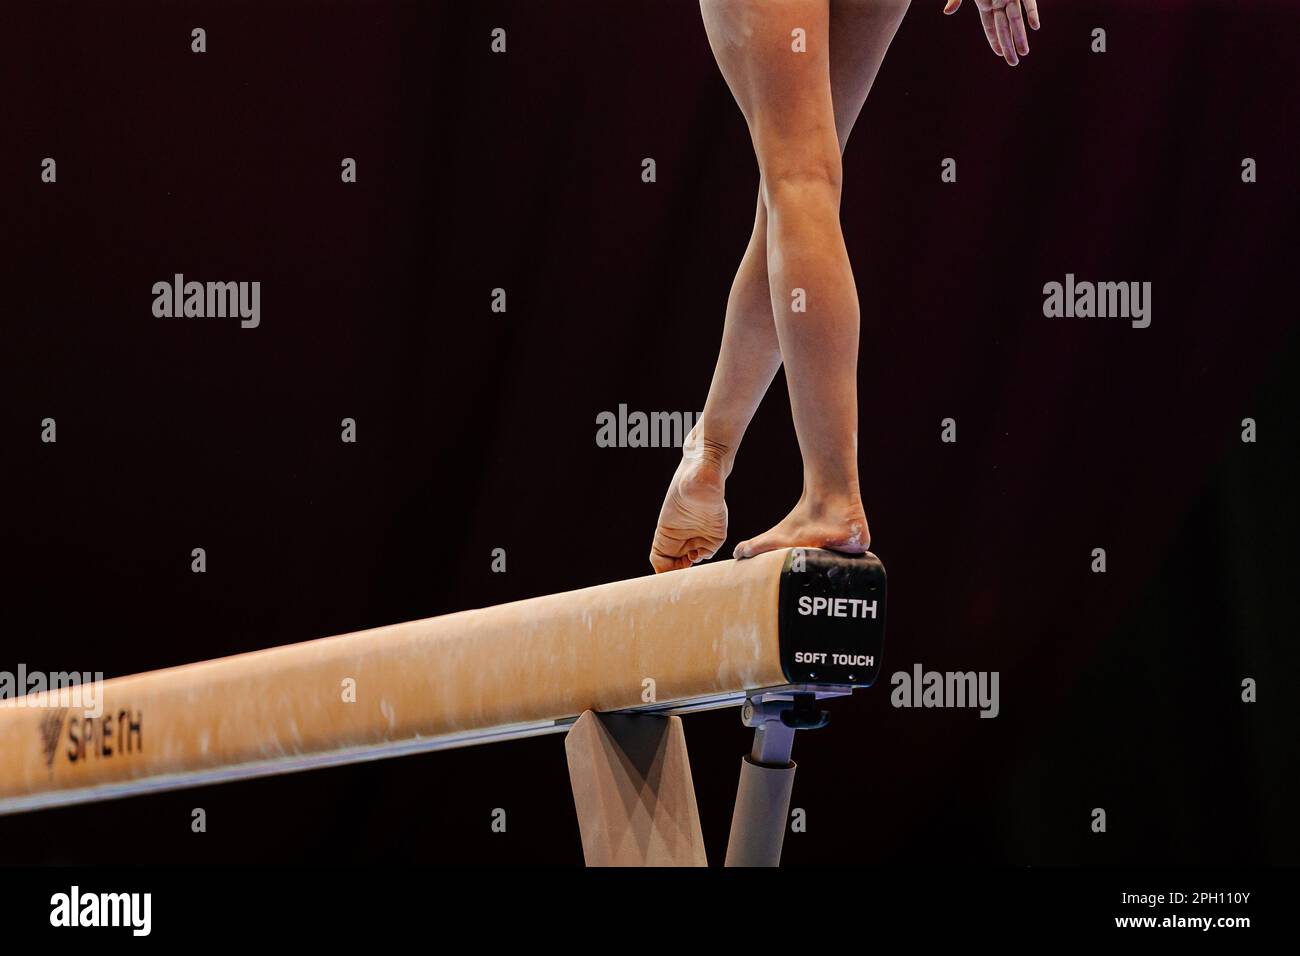 Beine weibliche Turnerin, die trainiert Balance Beam Spieth Modell Soft Touch, Sommersportspiele Stockfoto